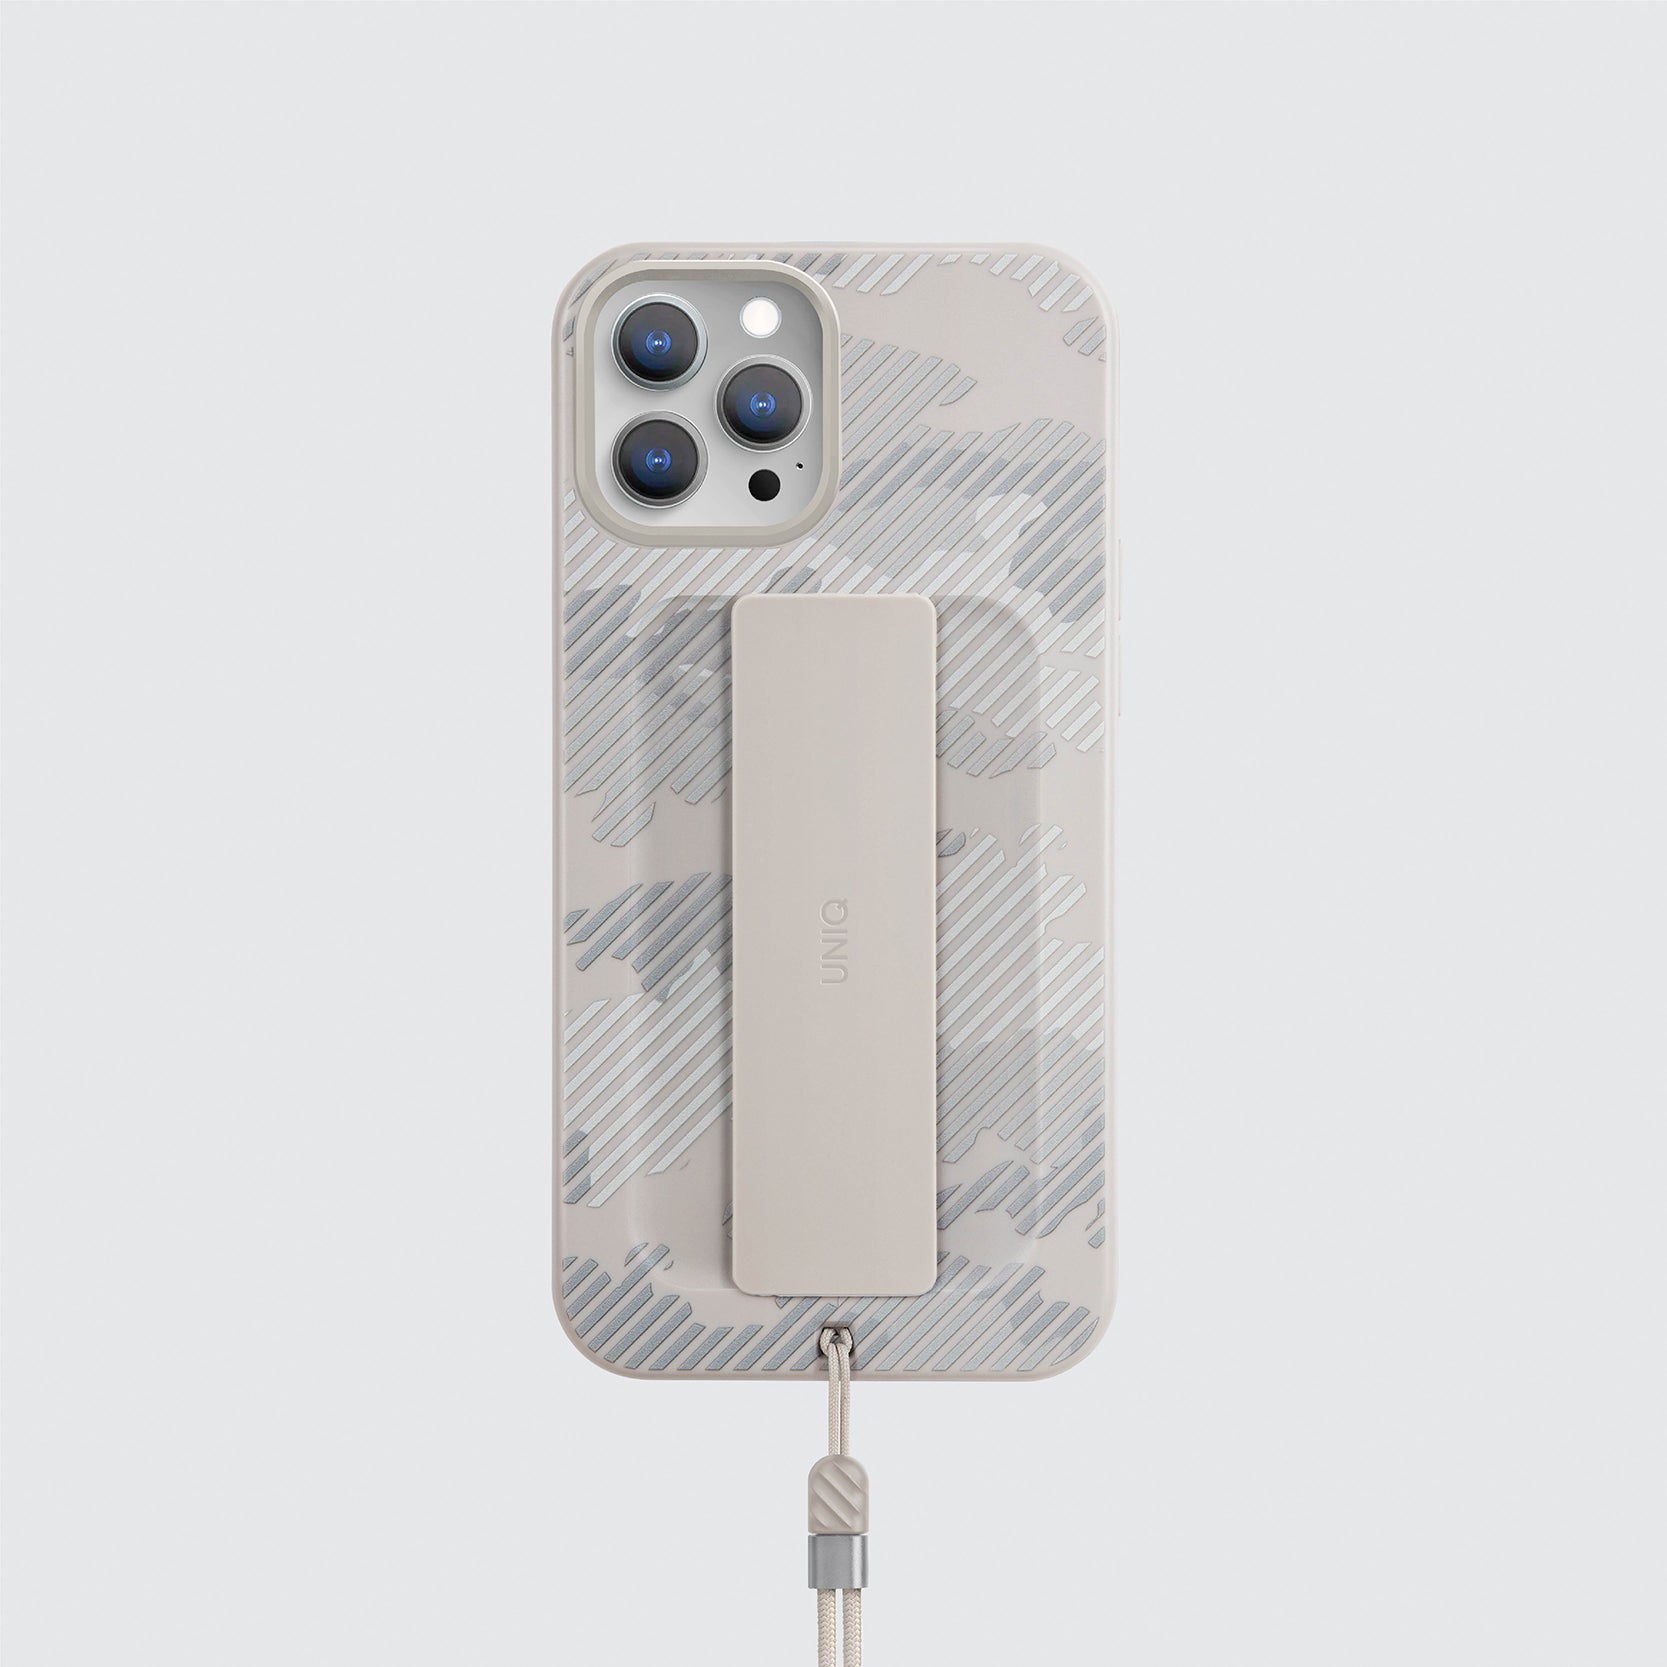 Uniq Iphone 12/12 Pro Hybrid Heldro Designer Edition Case / Cover  - Ivory Camo - كفر حماية مع قبضه من شركة يونيك